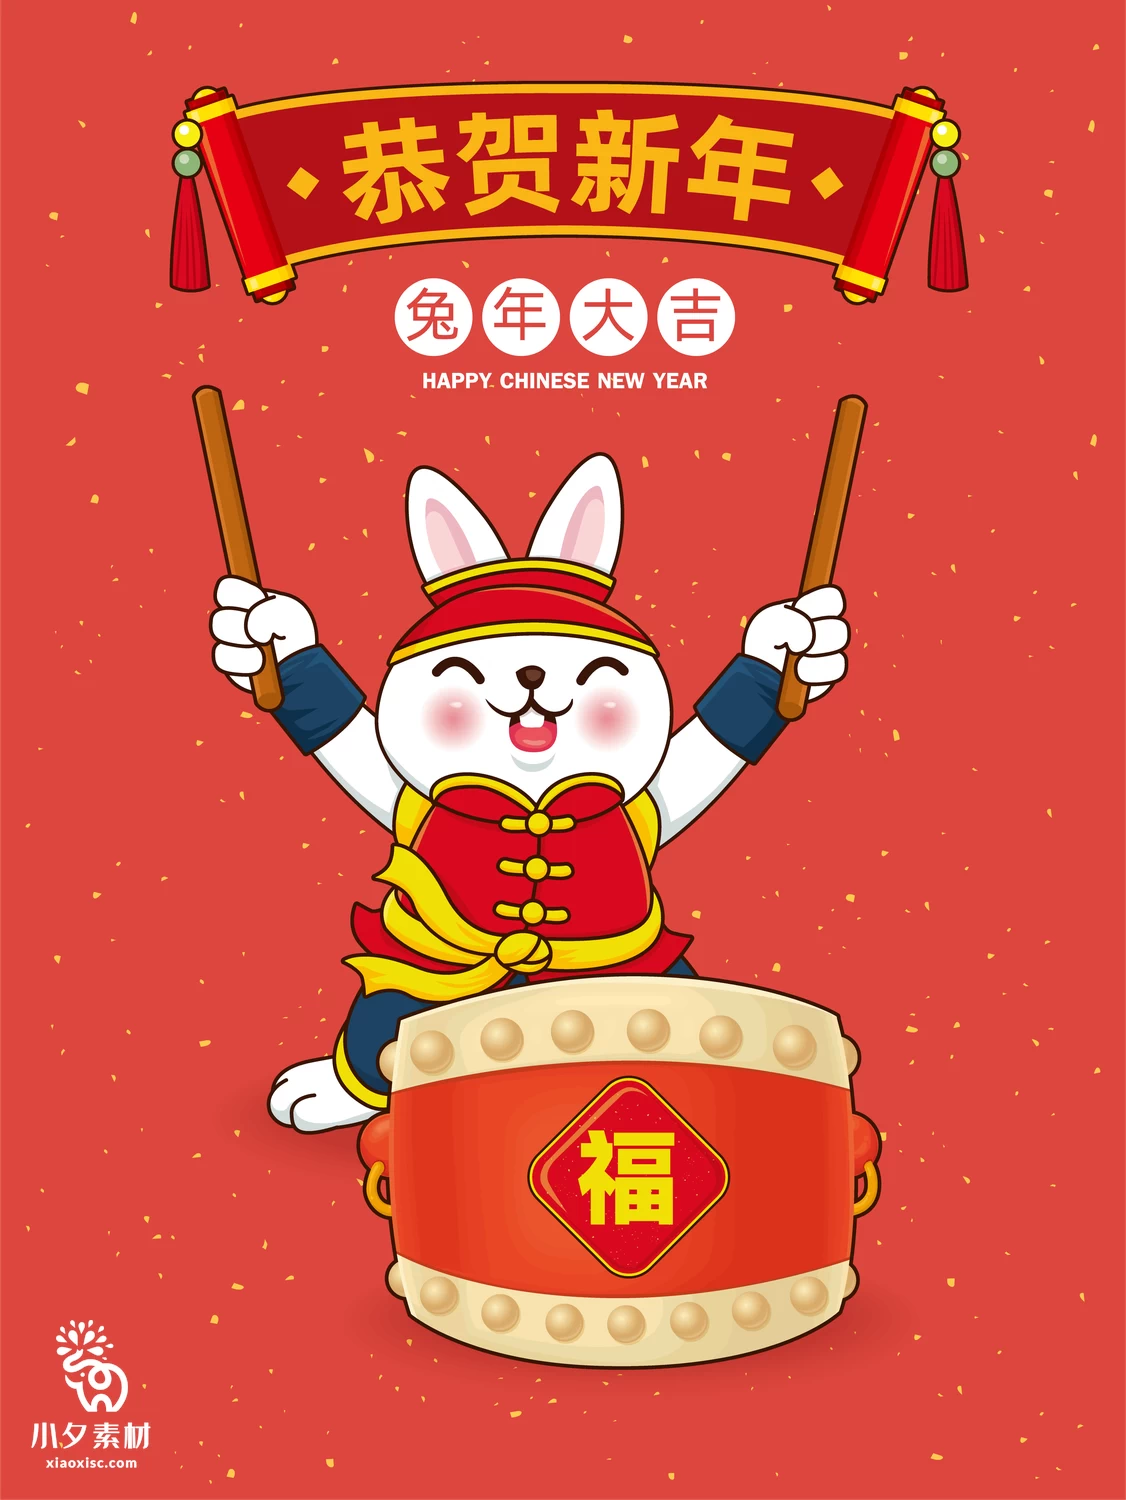 2023年兔年恭贺新春新年快乐喜庆节日宣传海报图片AI矢量设计素材【005】